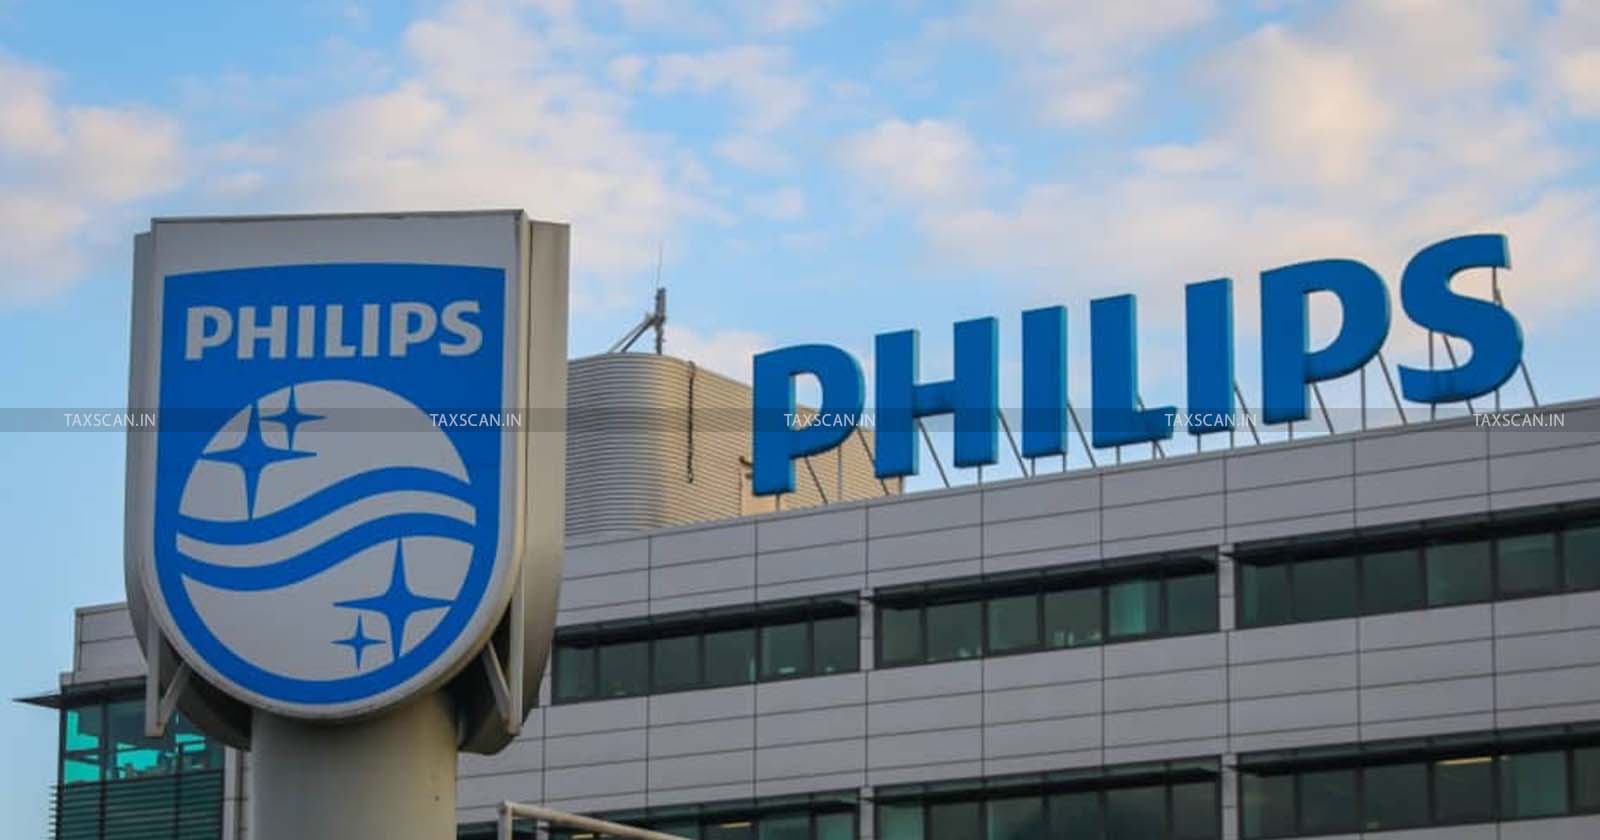 MBA Vacancy in Philips - CA Vacancy in Philips - CA Hiring in Philips - CA opportunities in Philips - CA careers in Philips - MBA Hiring in Philips - taxscan